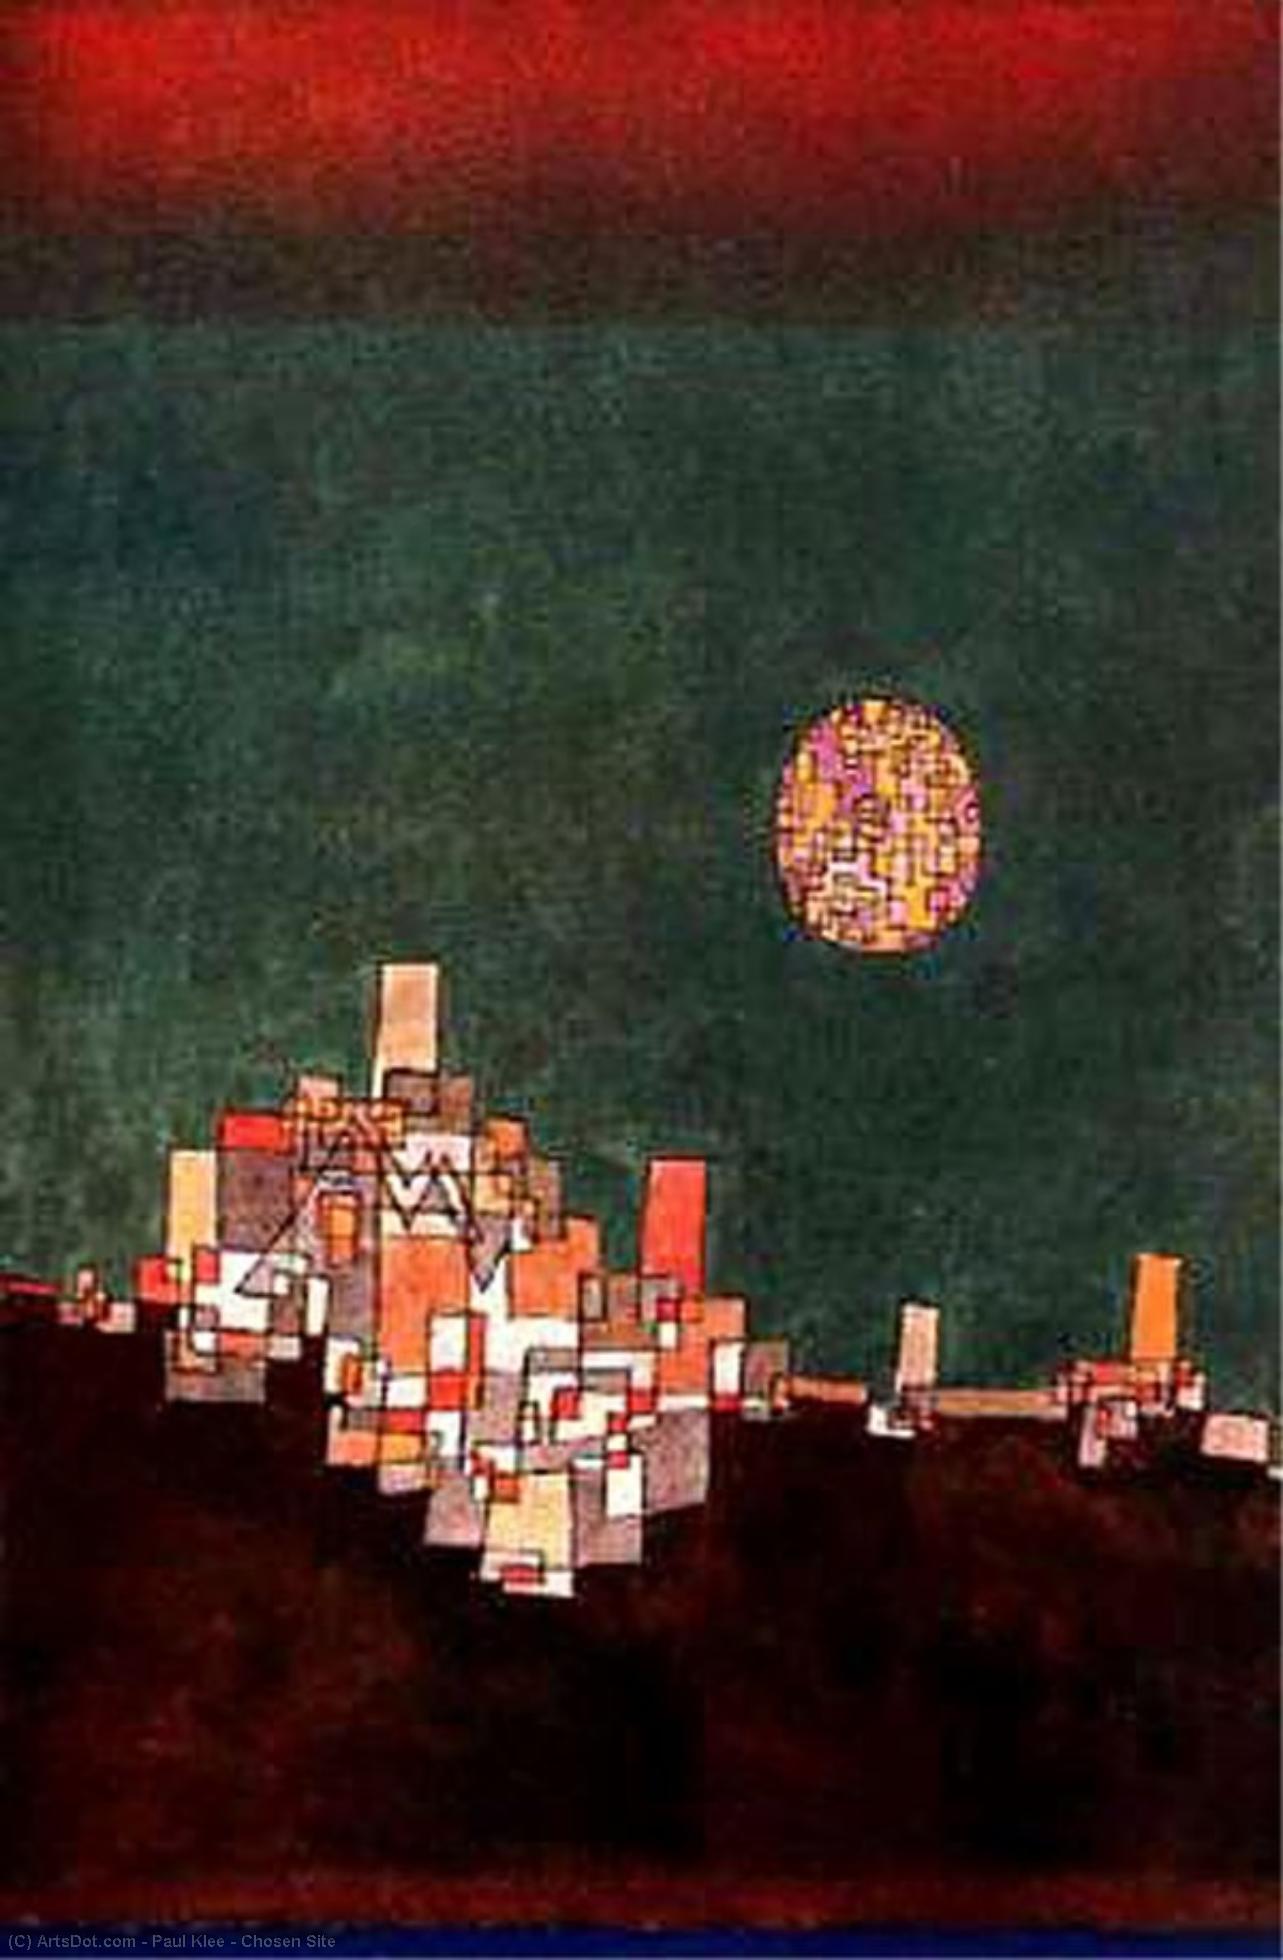 WikiOO.org - Енциклопедія образотворчого мистецтва - Живопис, Картини
 Paul Klee - Chosen Site